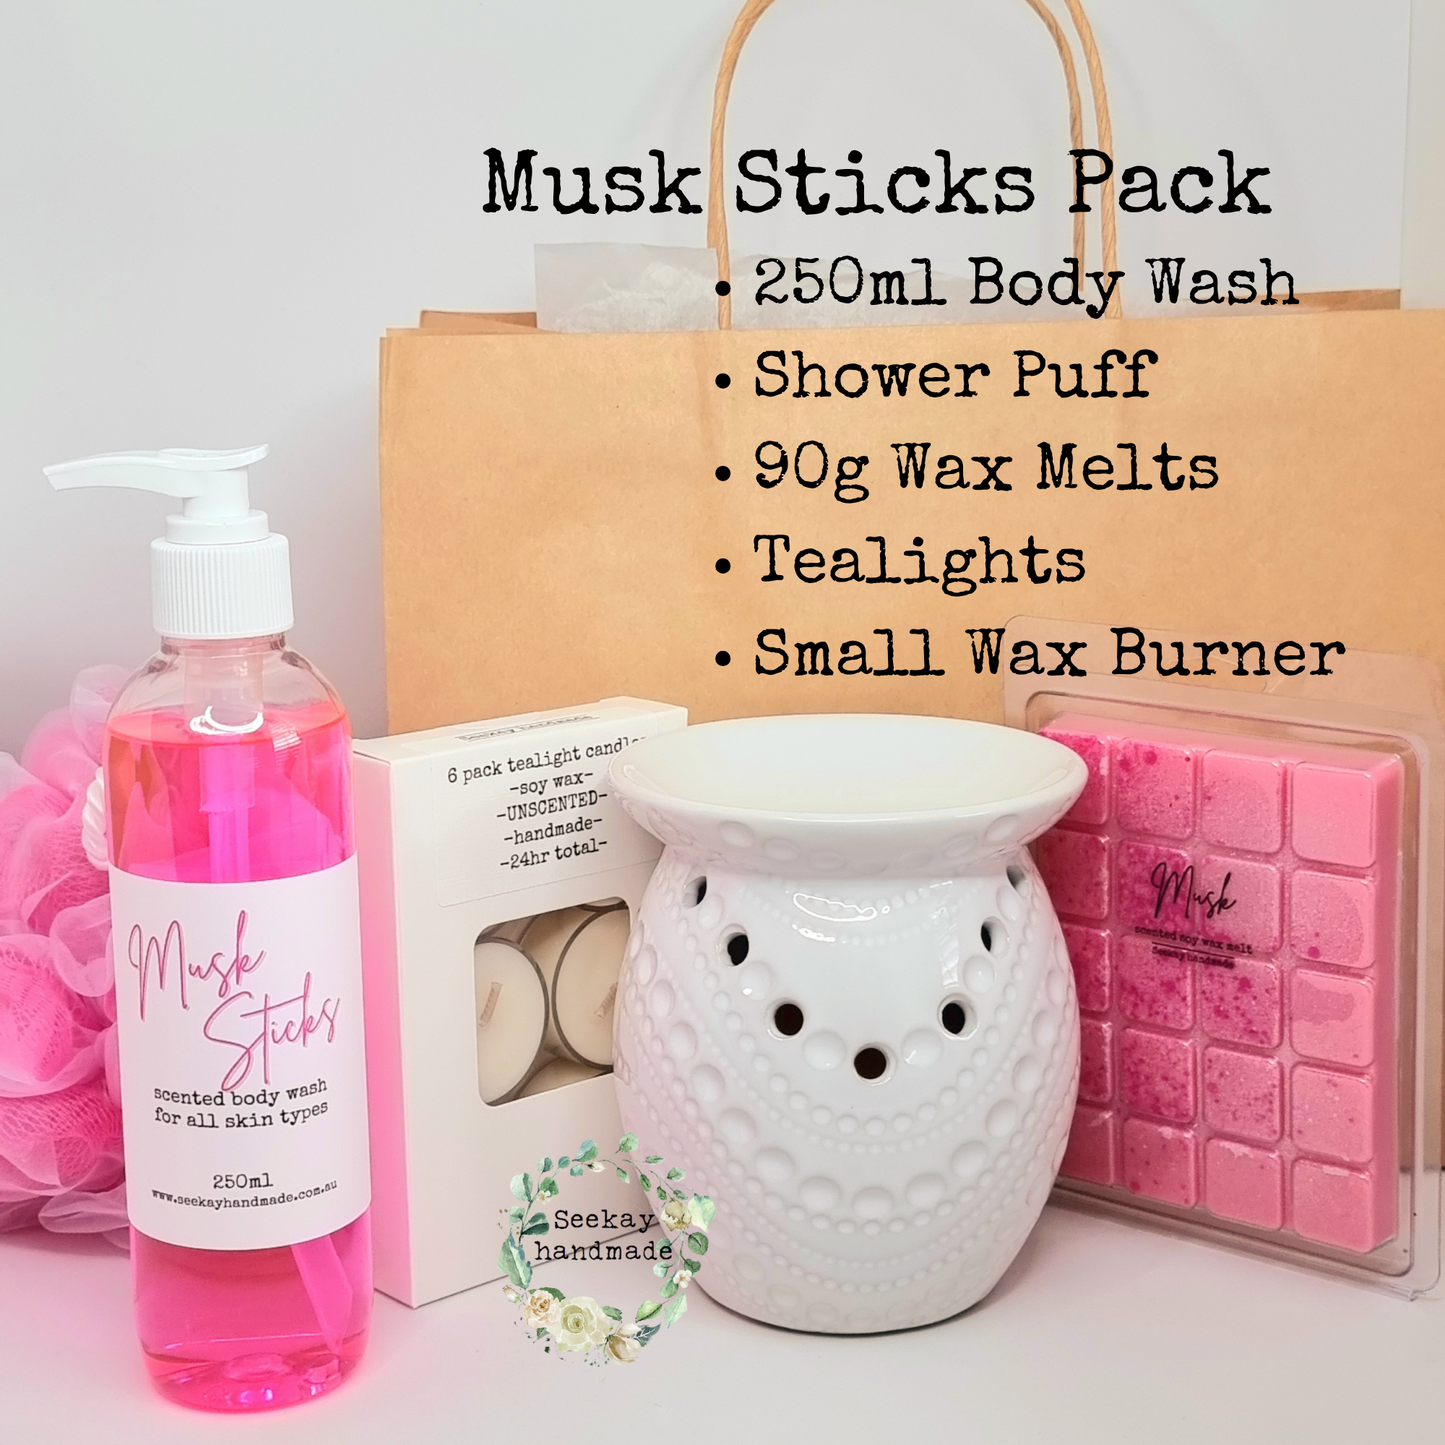 Wax Melt Pack Musk sticks scented body wash, wax melts, tealight burner, tealight candles, gift idea, pamper pack